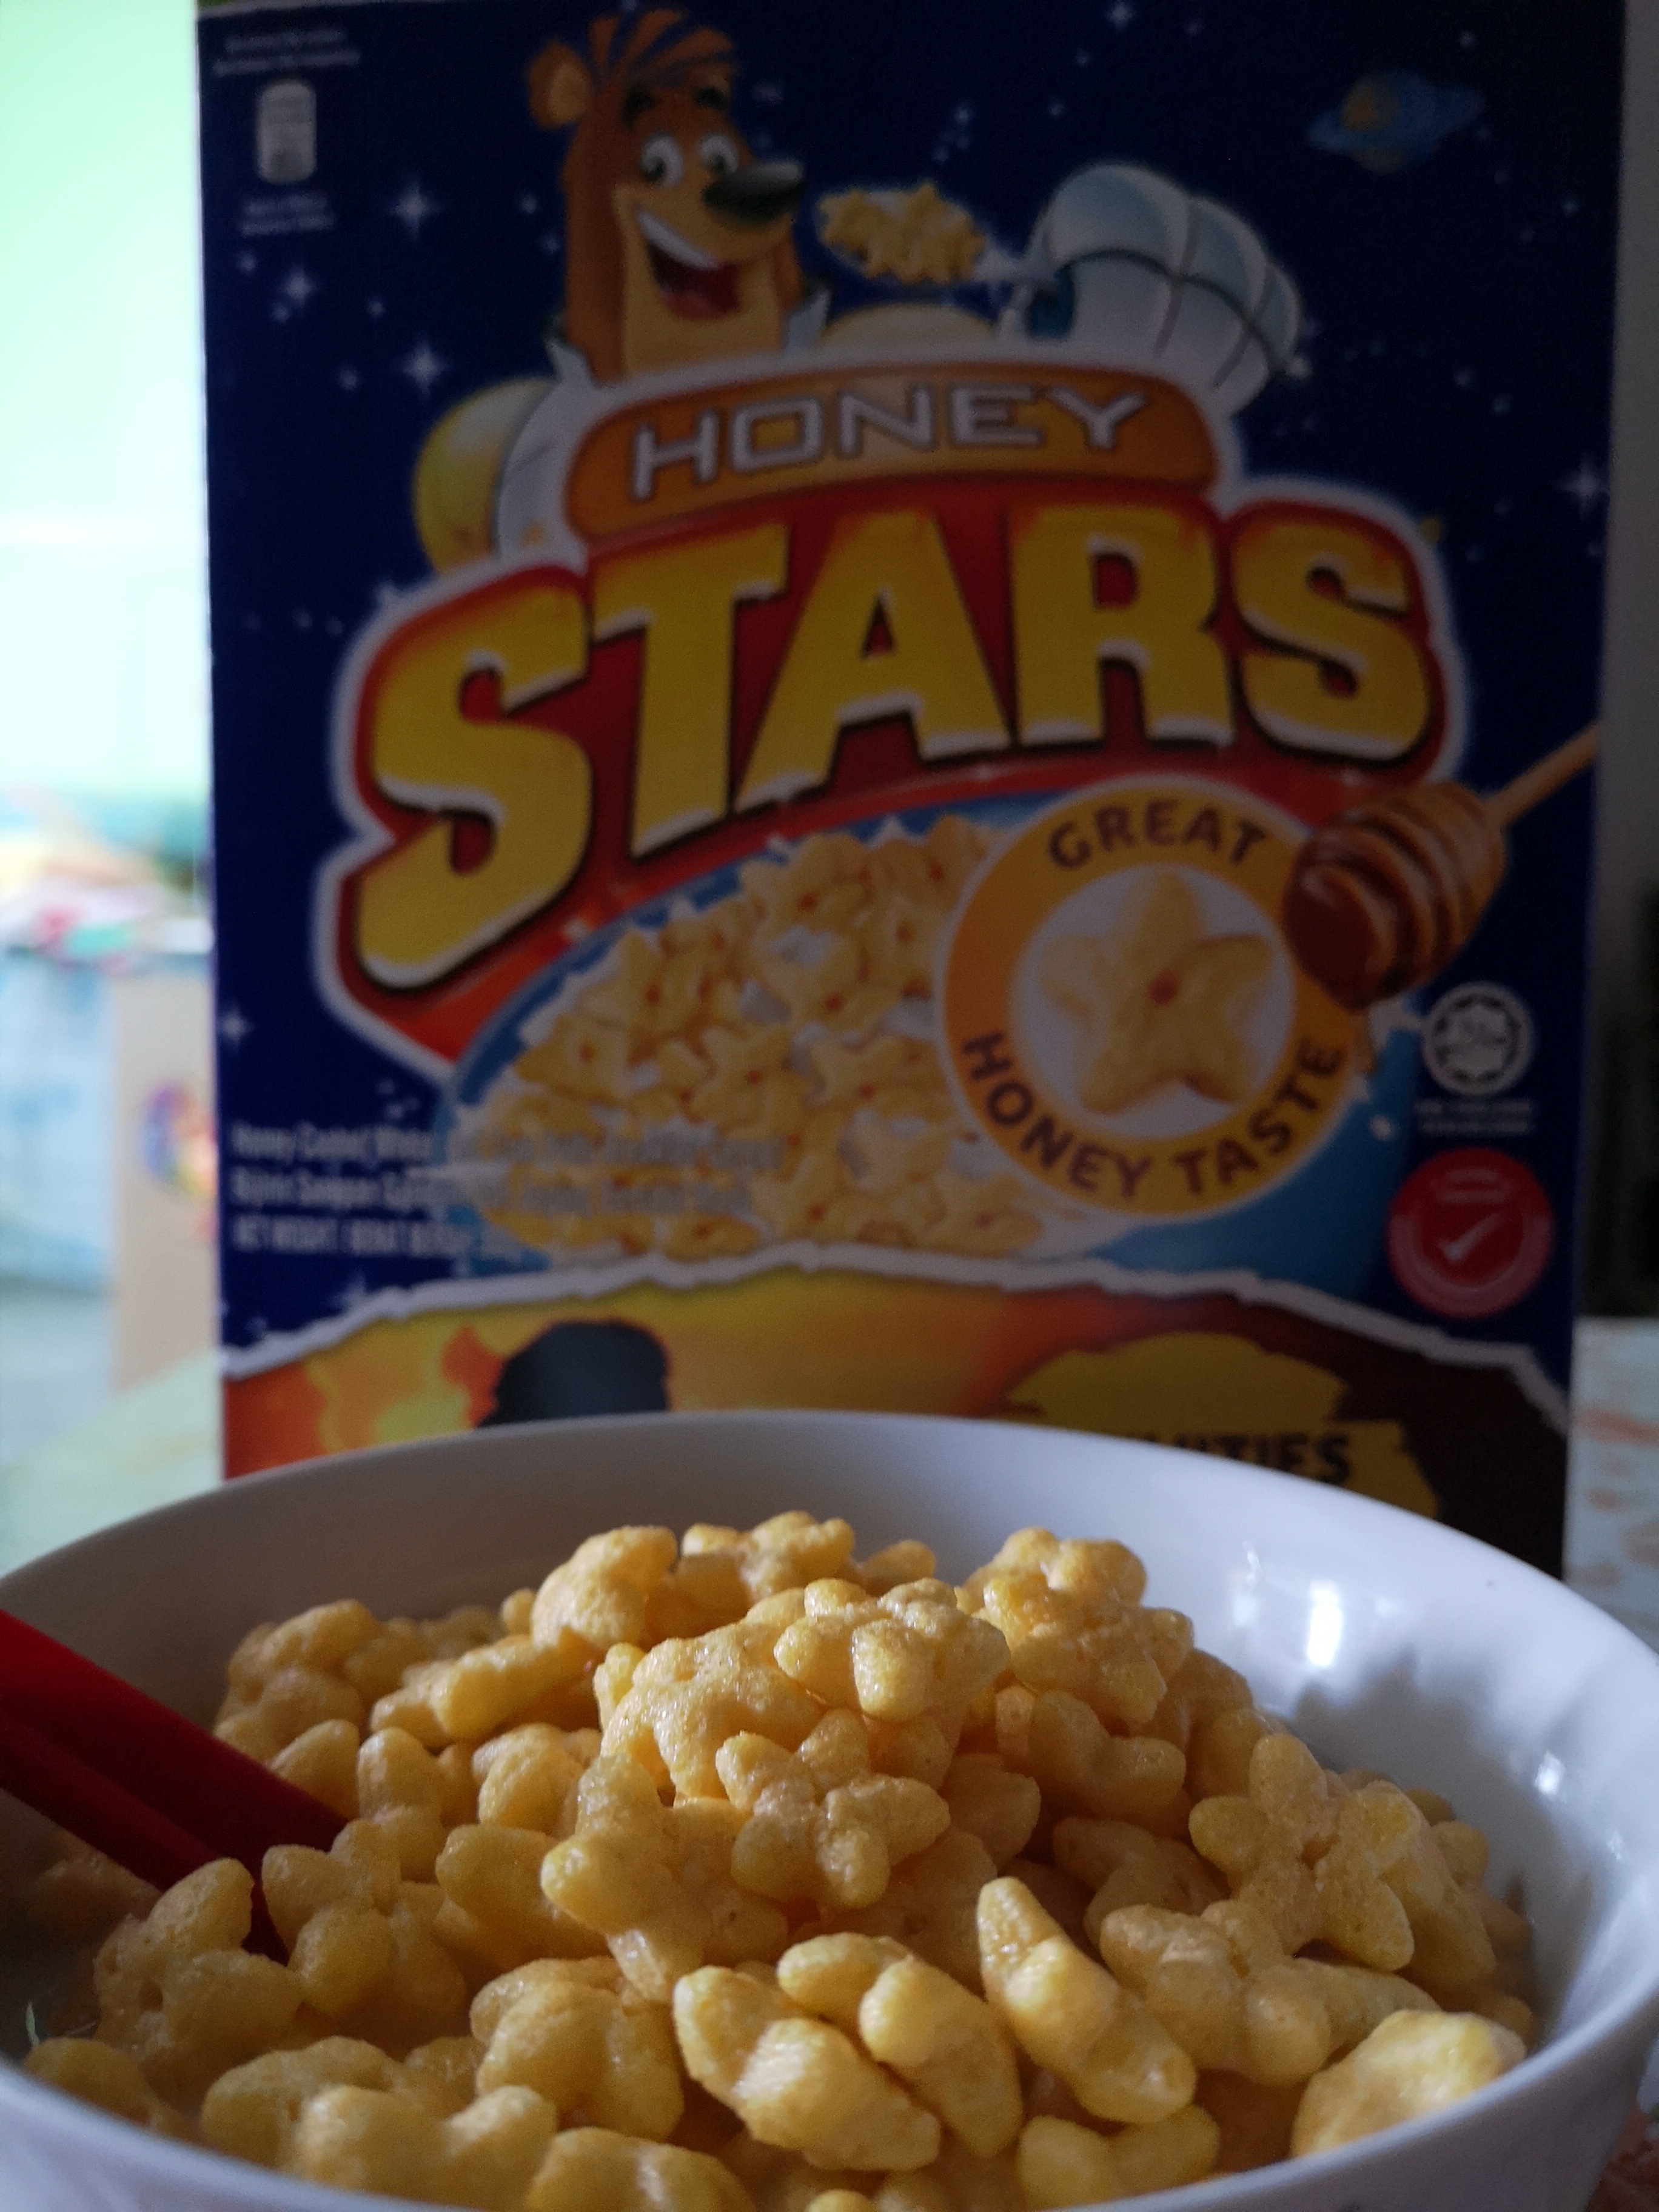 @10969vivian Honey stars cereal